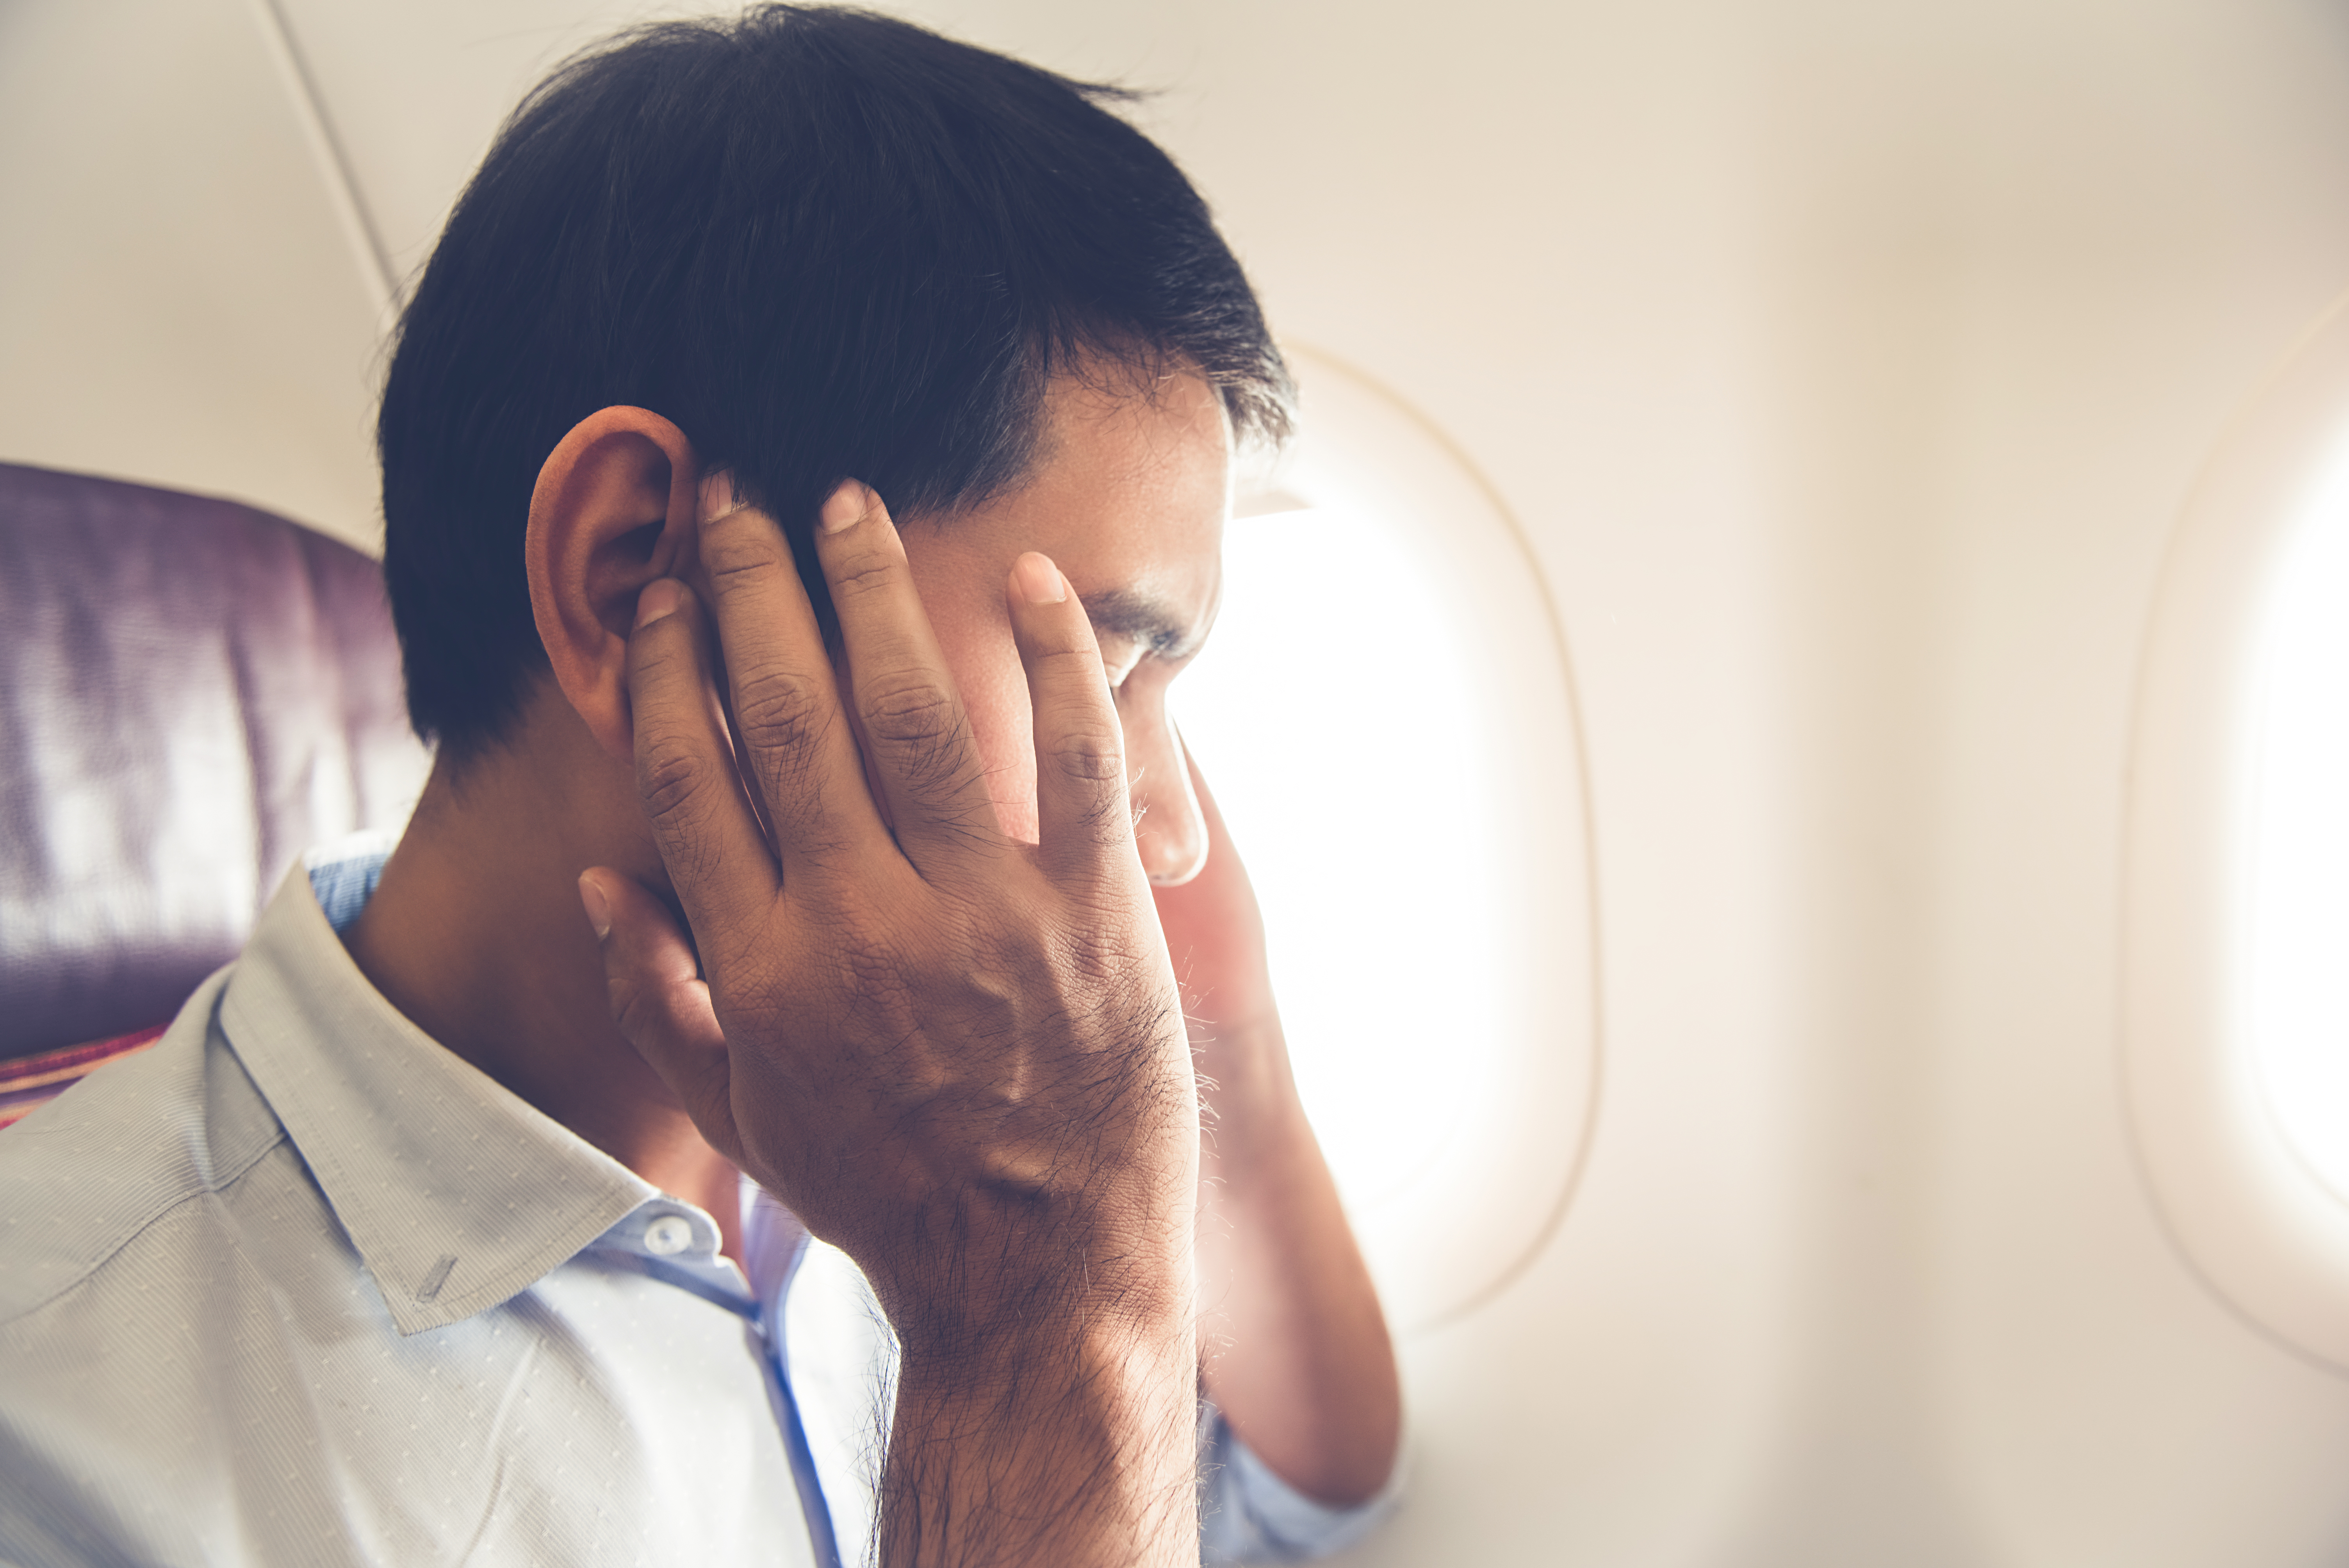 Ein frustrierter männlicher Flugpassagier | Quelle: Shutterstock